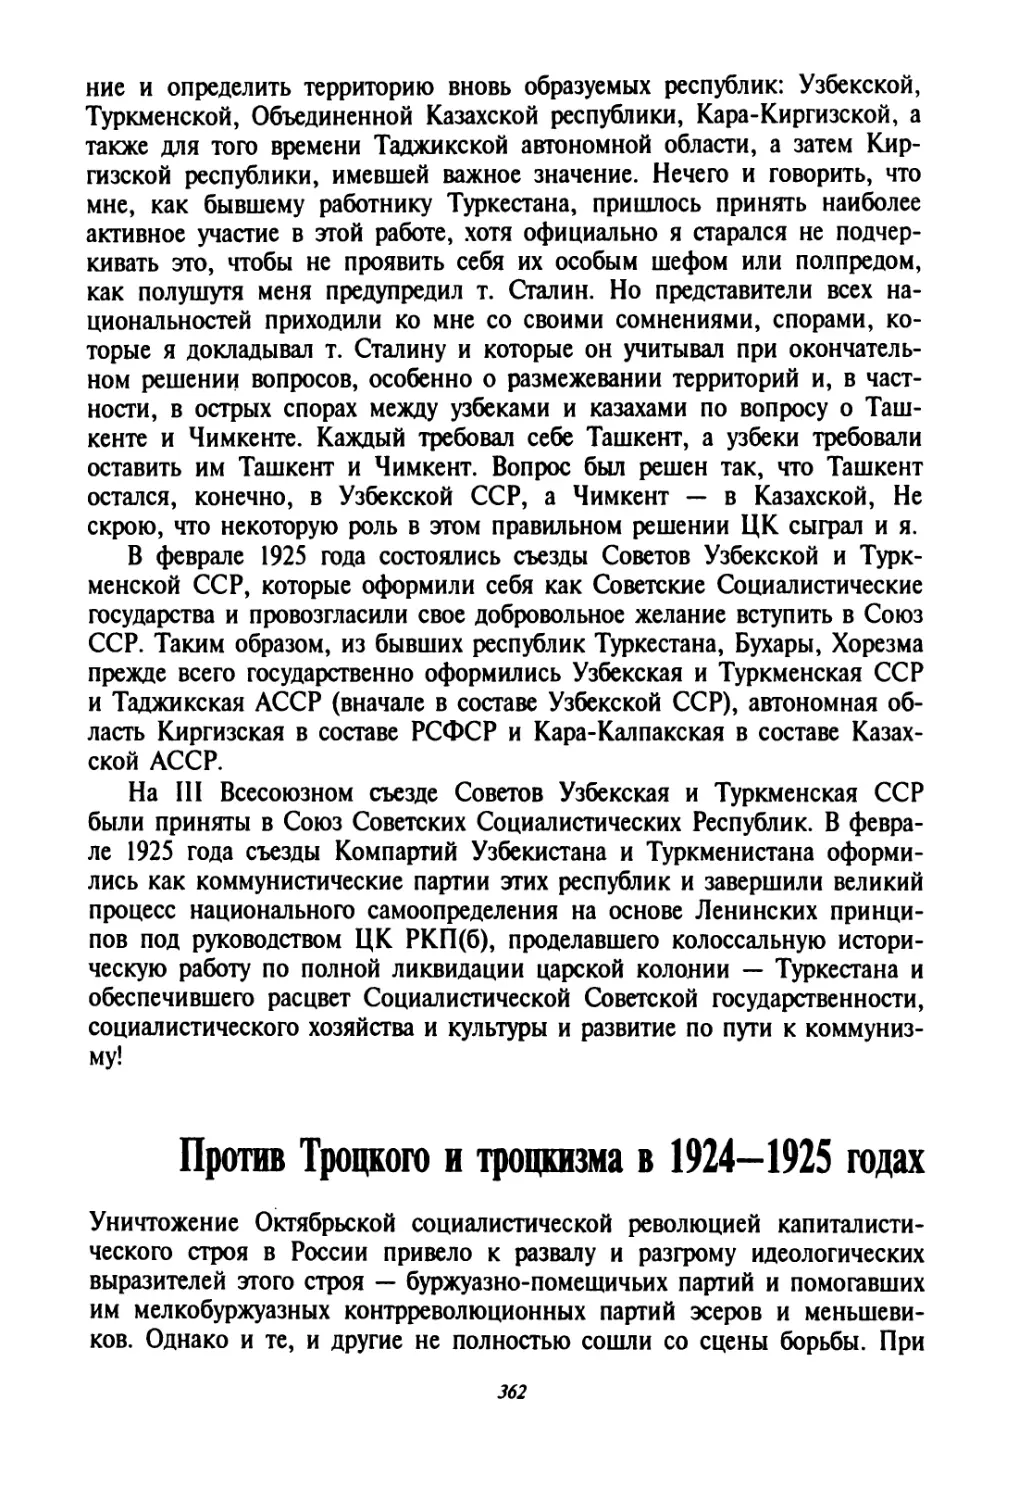 Против Троцкого и троцкизма в 1924—1925 годах